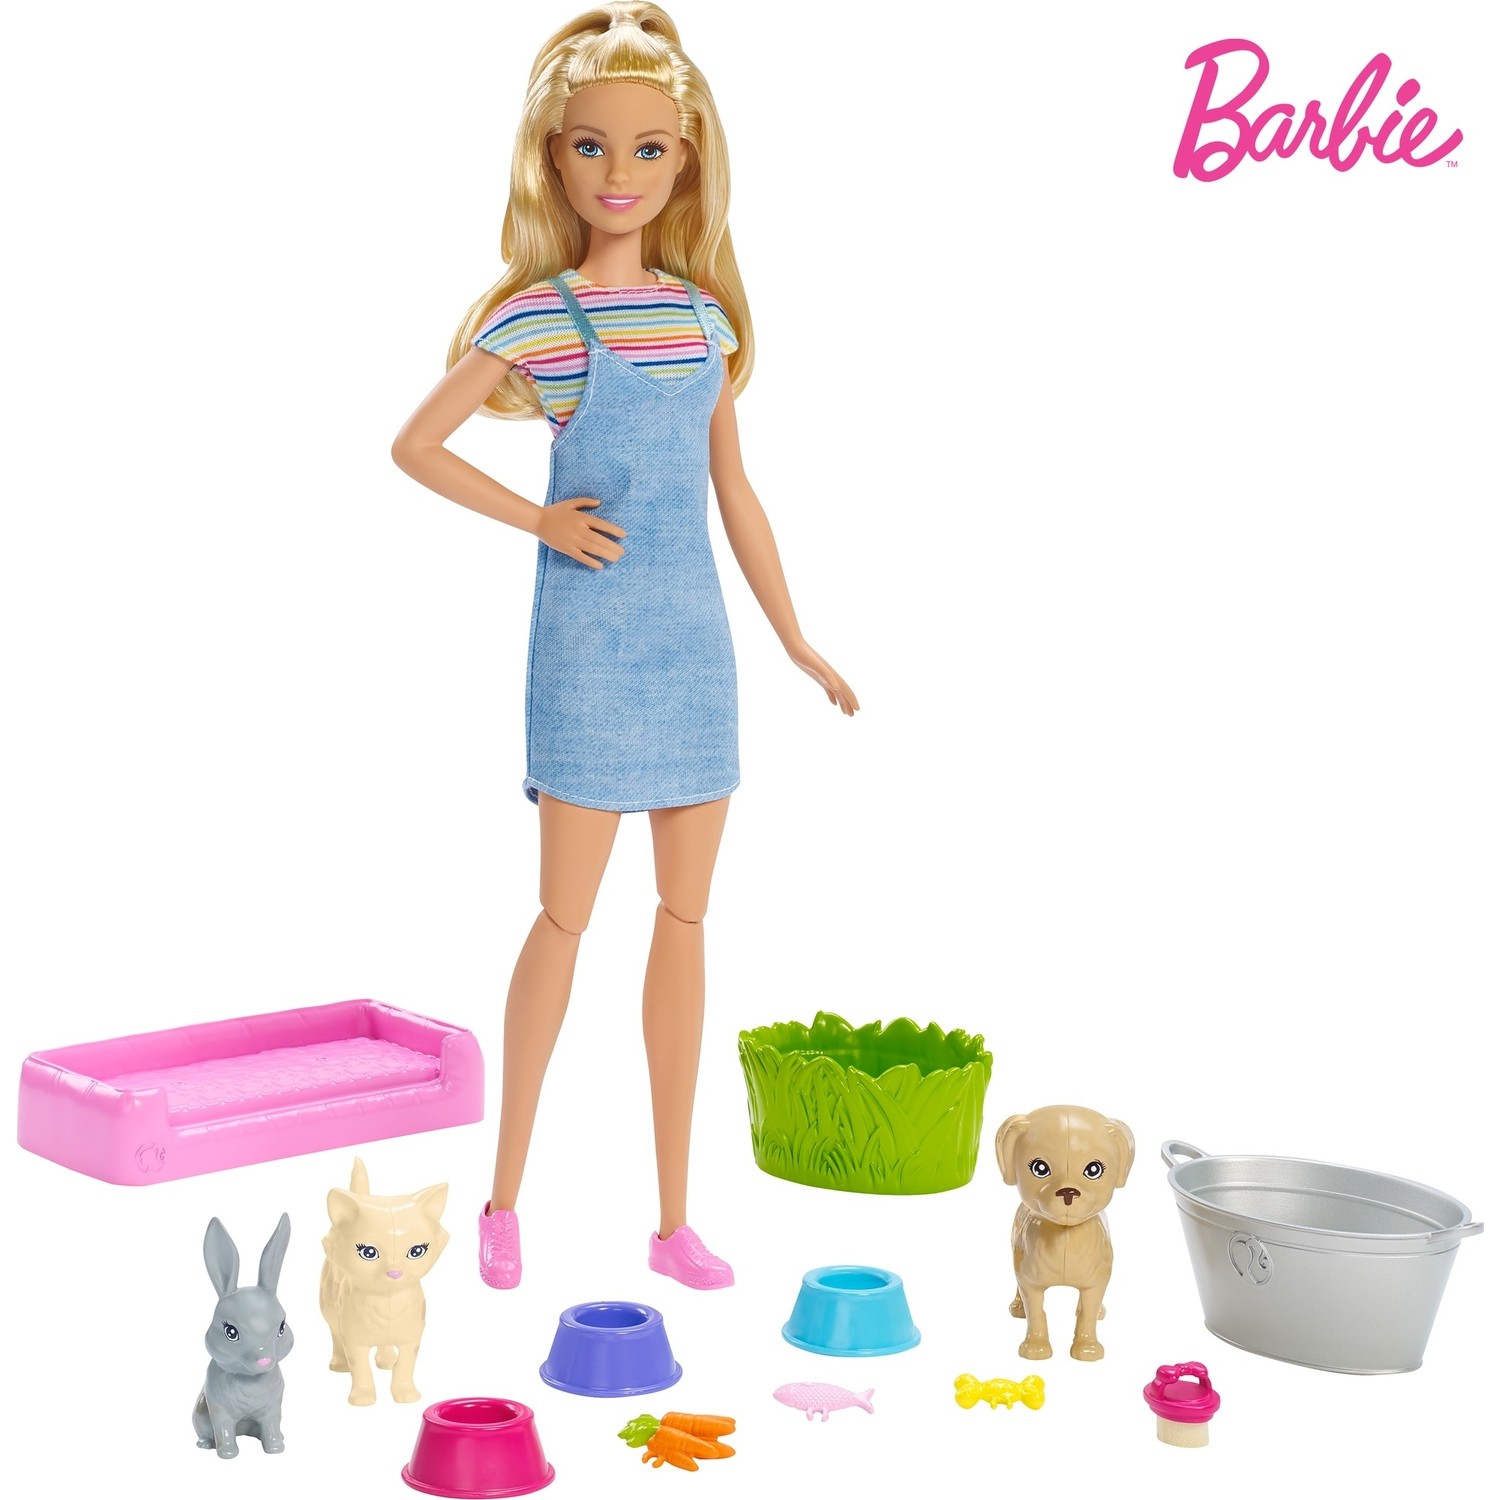 Barbie Ve Hayvanlari Banyo Eglencesinde Oyun Seti Fxh11 Fiyati